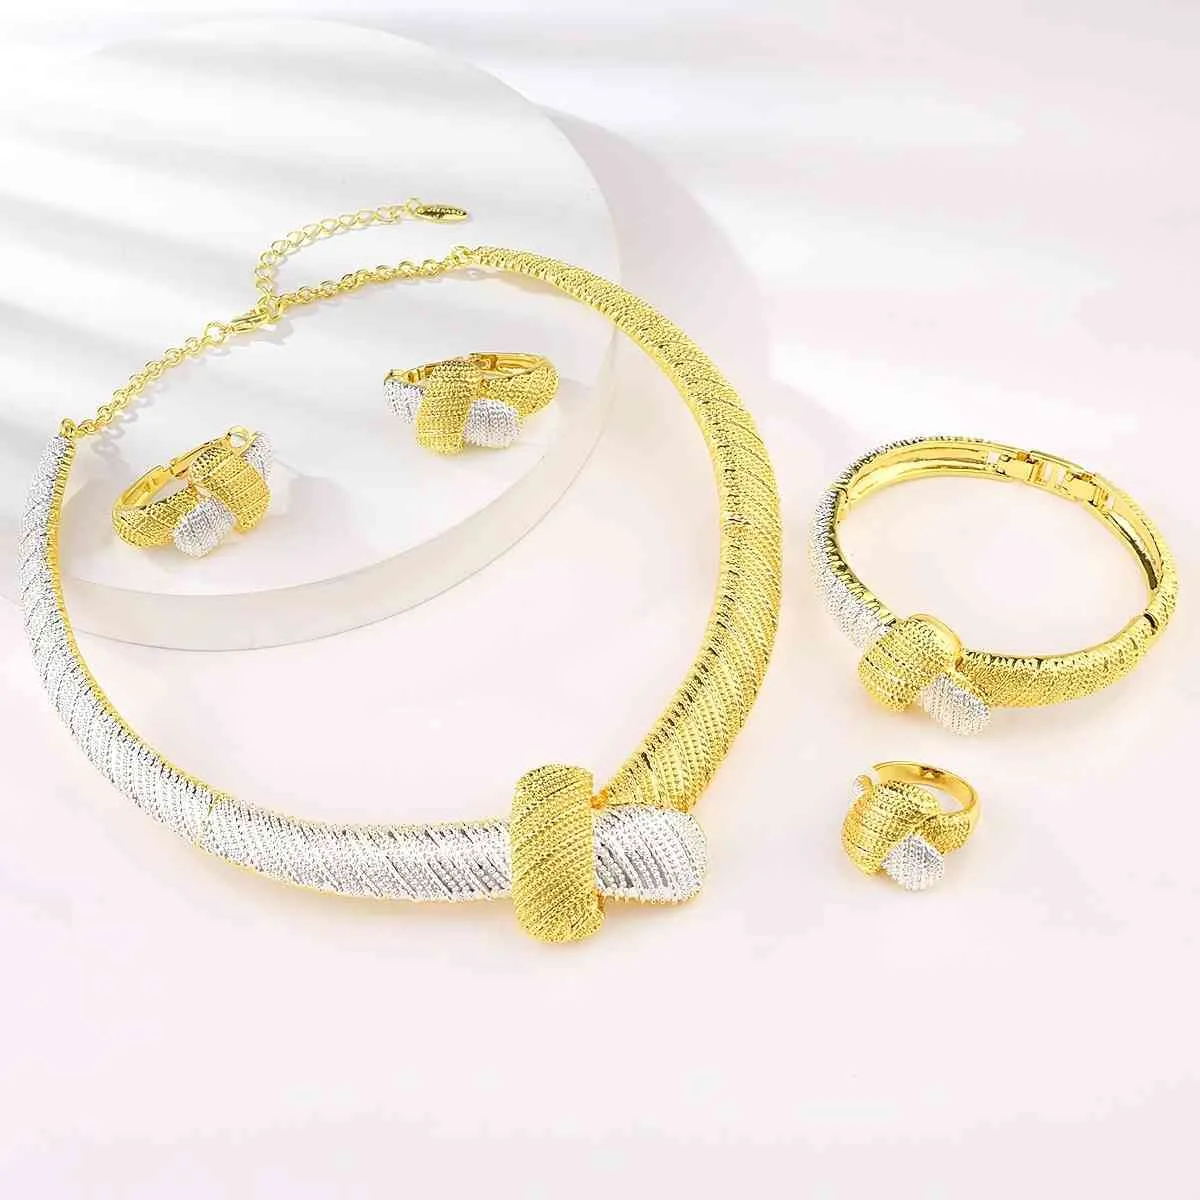 Vienois Dubai Gold Серебро Цвет Женщины Ожерелья Серьги Кольцо Браслет Устанавливает Индийские Свадебные Украшения для Bridal